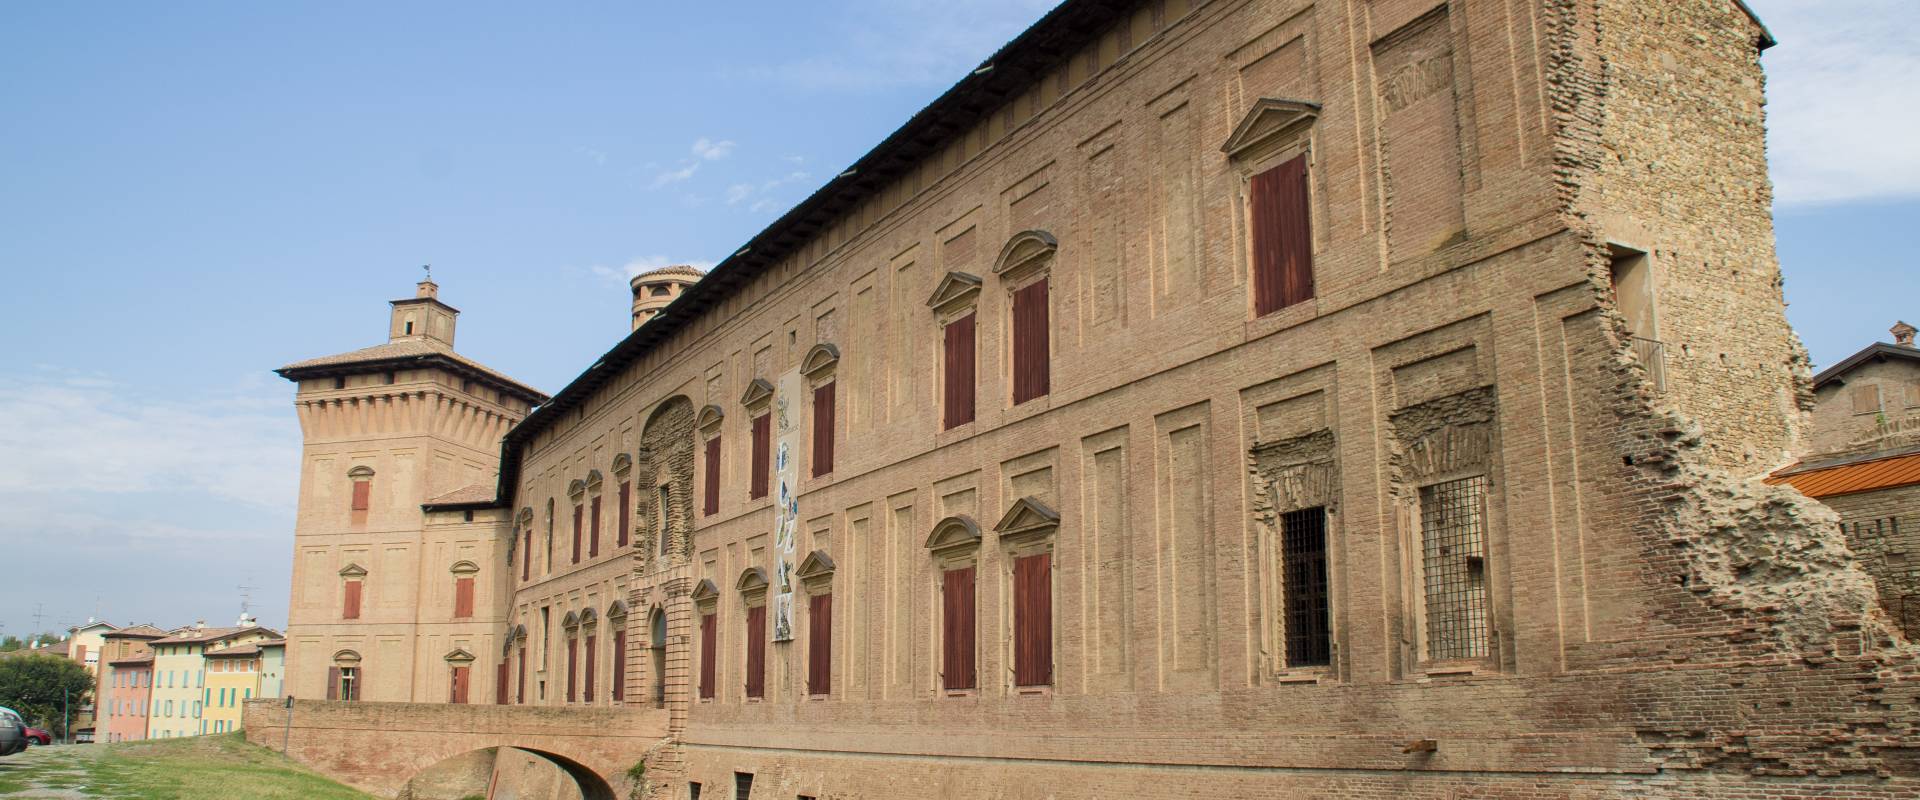 Rocca dei Boiardo-facciata principale2 foto di Arianna Perez